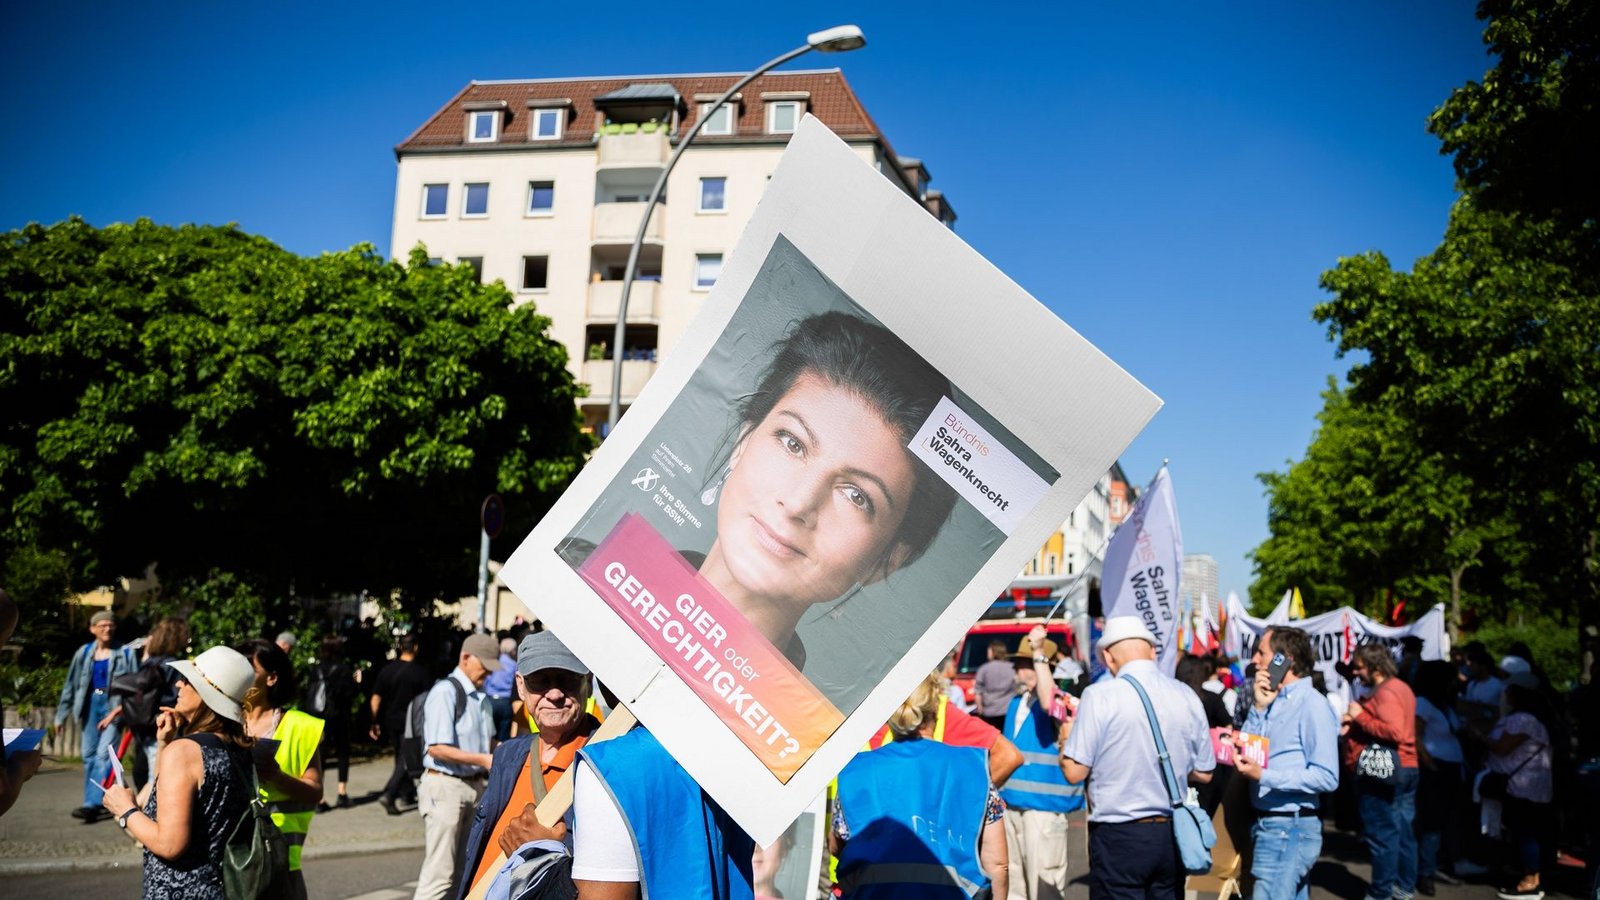 Das Bündnis Sahra Wagenknecht erfreut sich laut einer Umfrage in Thüringen wachsender Beliebtheit.Foto: Christoph Soeder/dpa